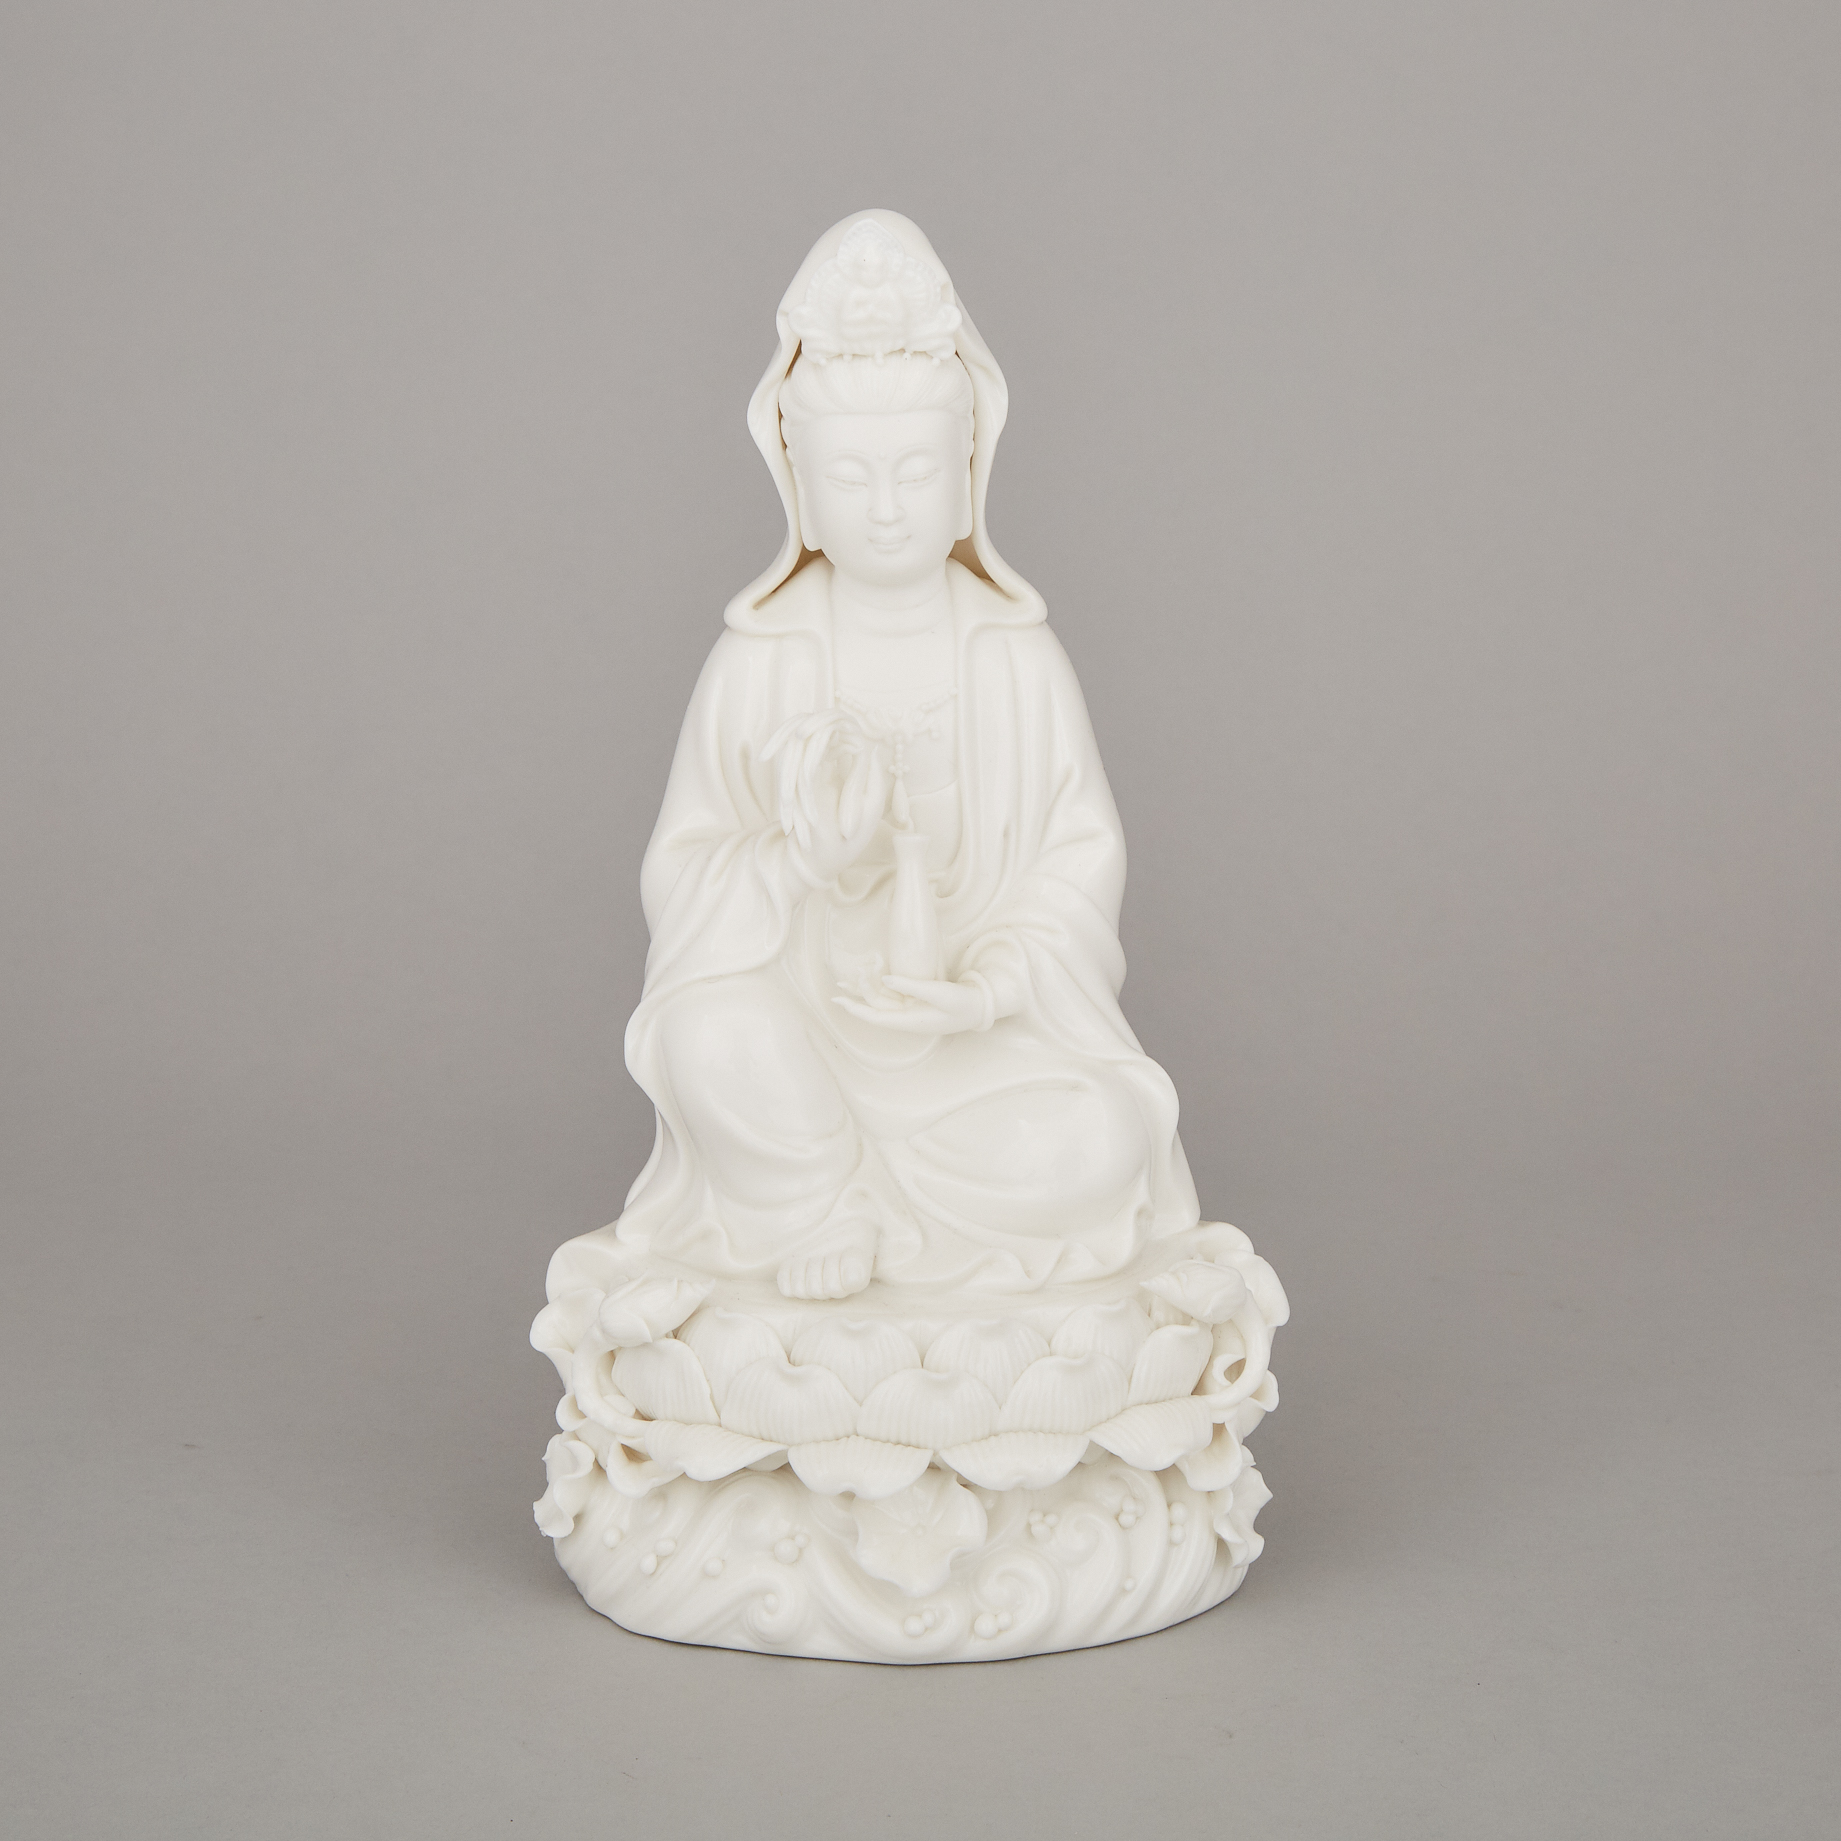 A Blanc de Chine Figure of Guanyin